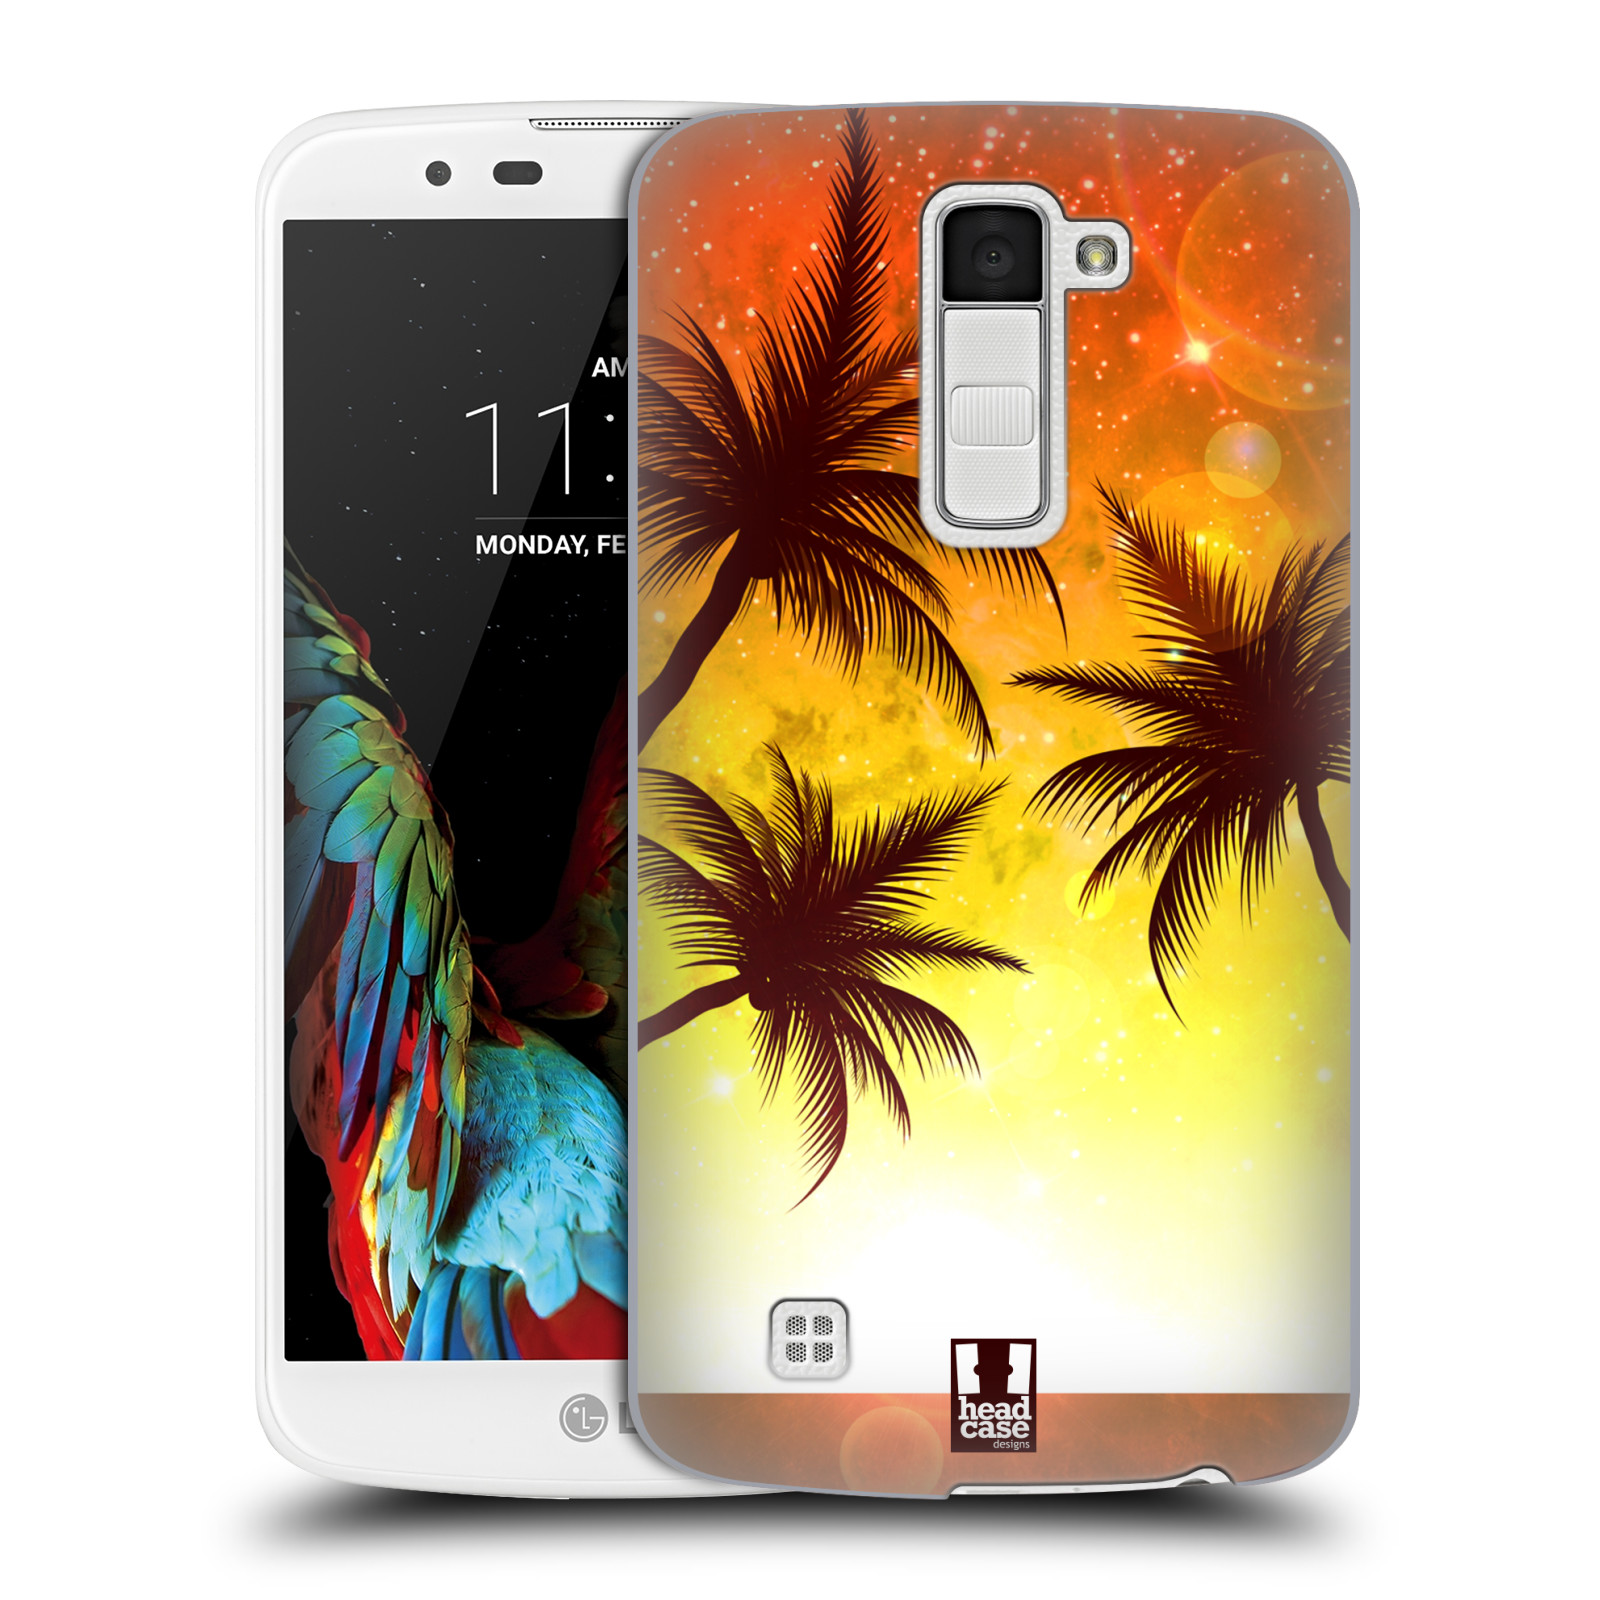 HEAD CASE plastový obal na mobil LG K10 vzor Kreslený motiv silueta moře a palmy ORANŽOVÁ